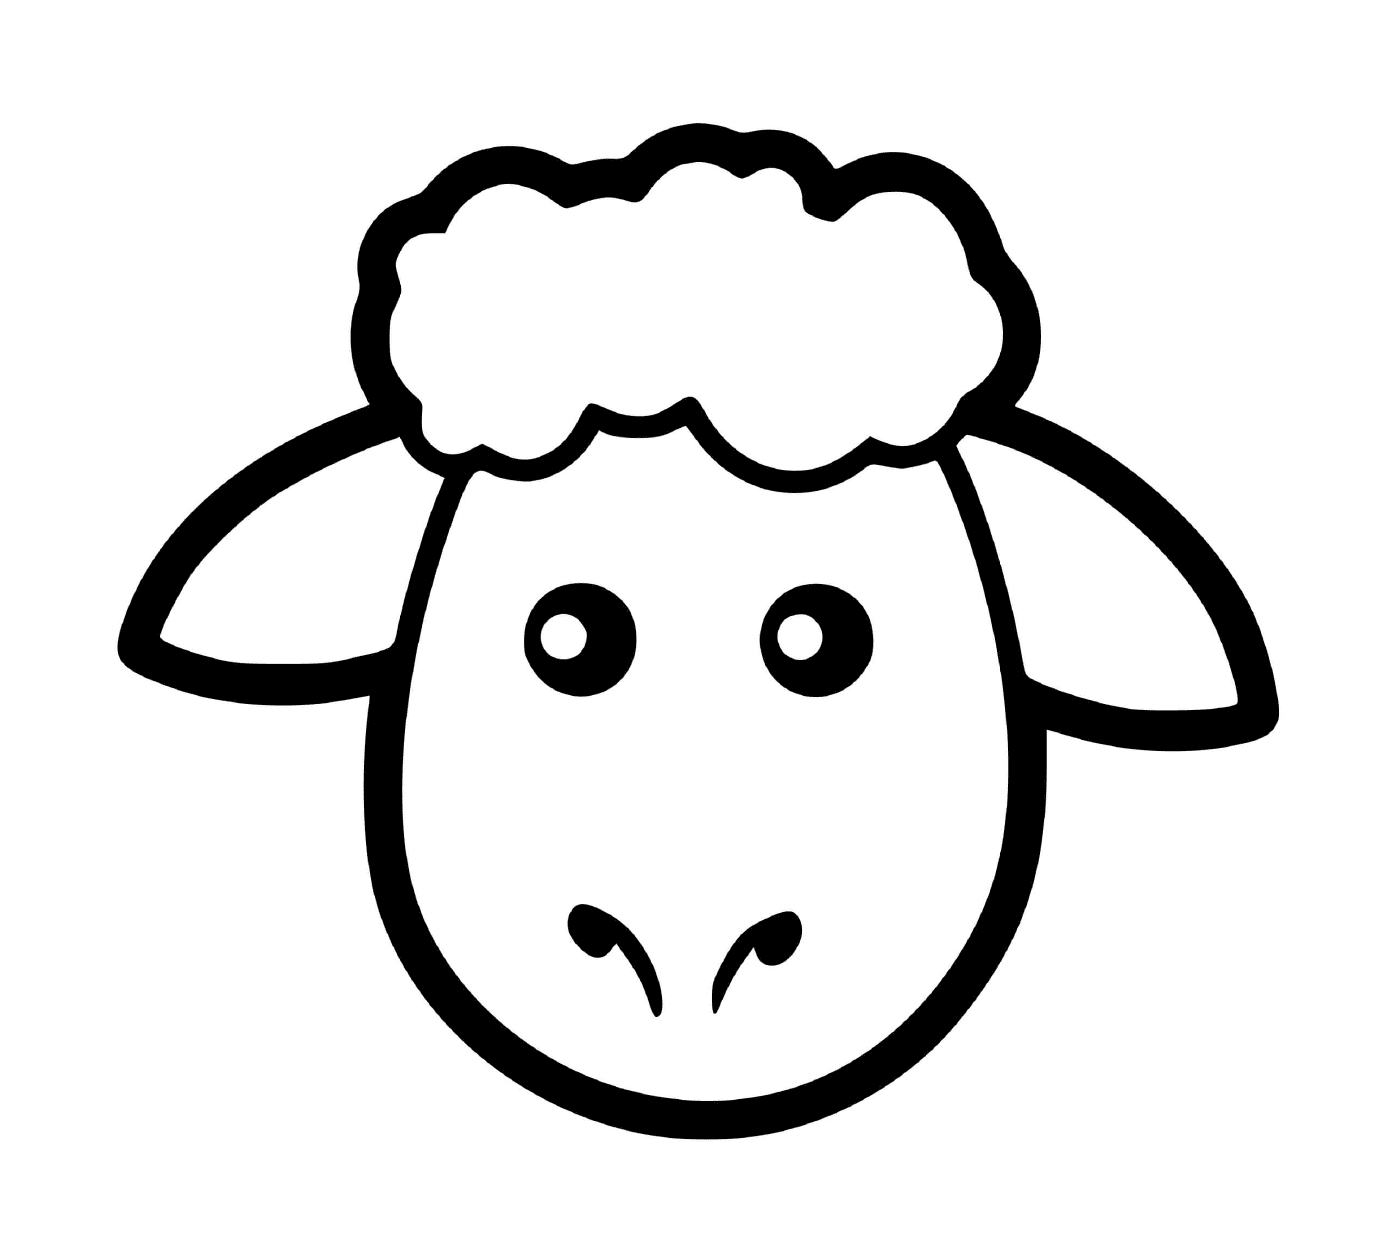 coloriage tete de mouton